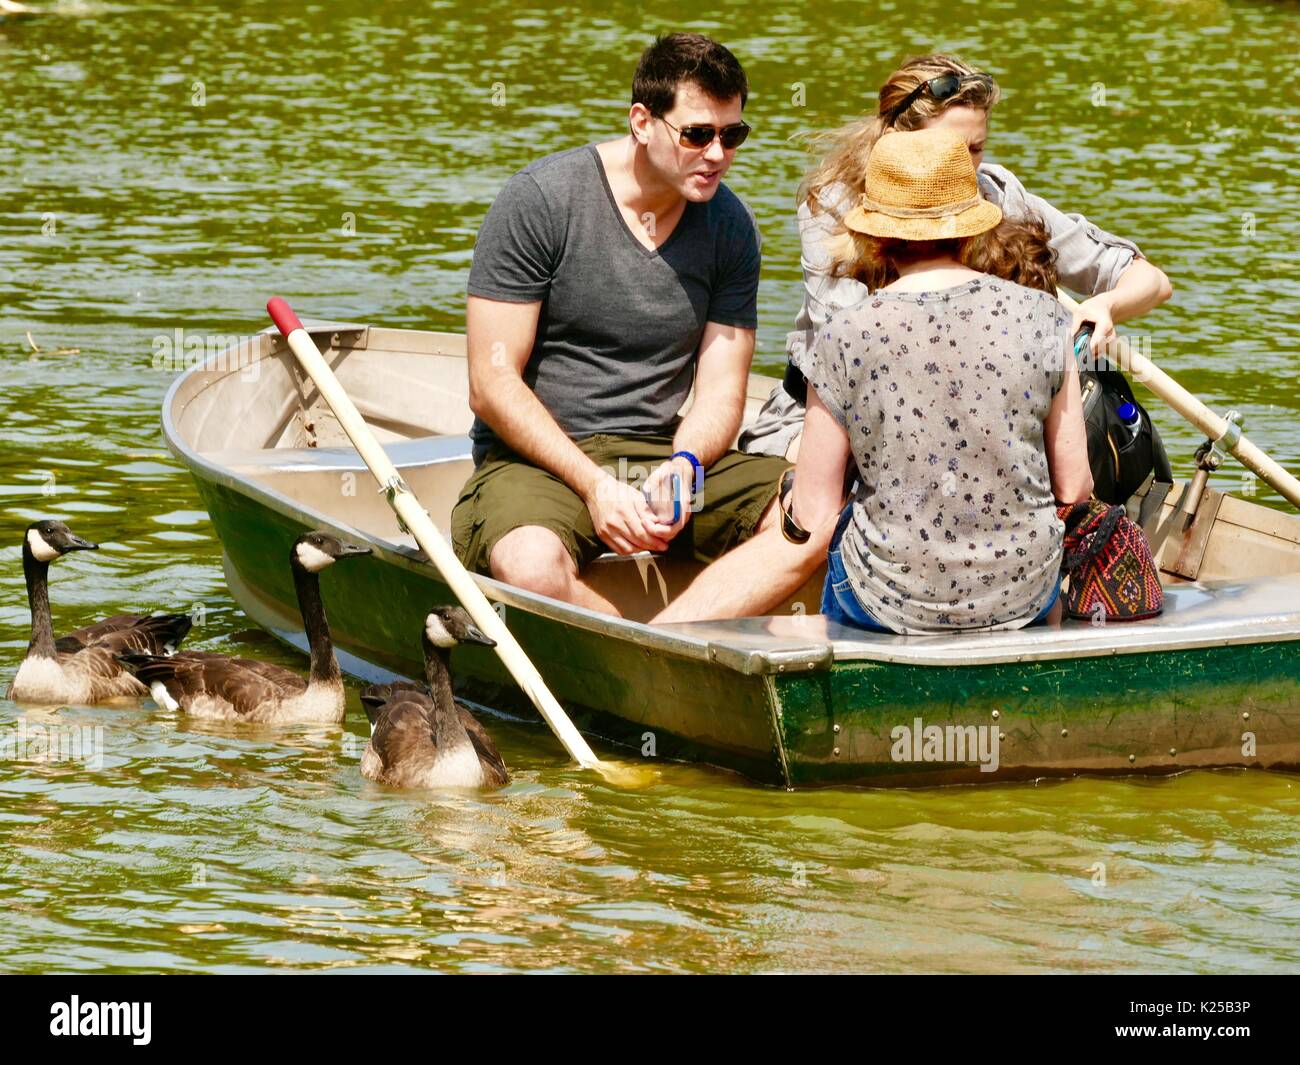 Les gens se détendre dans une chaloupe sur un lac avec des algues, alors que trois oies à côté du bateau quémander de la nourriture. Central Park, New York, NY, USA. Banque D'Images